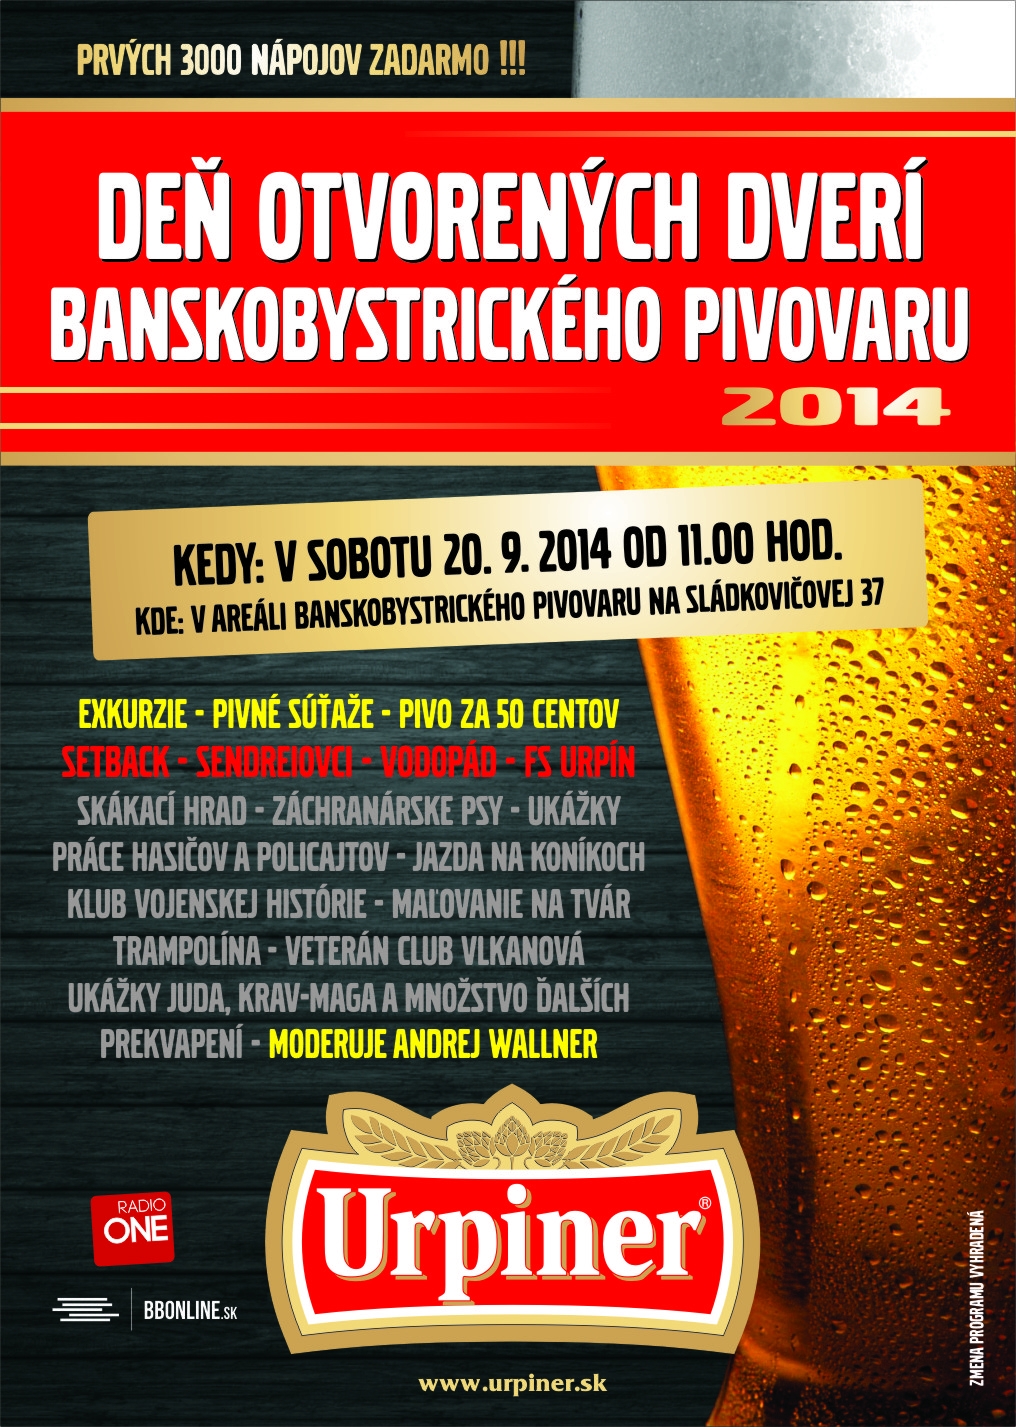 URPINER de otvorench dver  Bansk Bystrica  2014  - 9. ronk